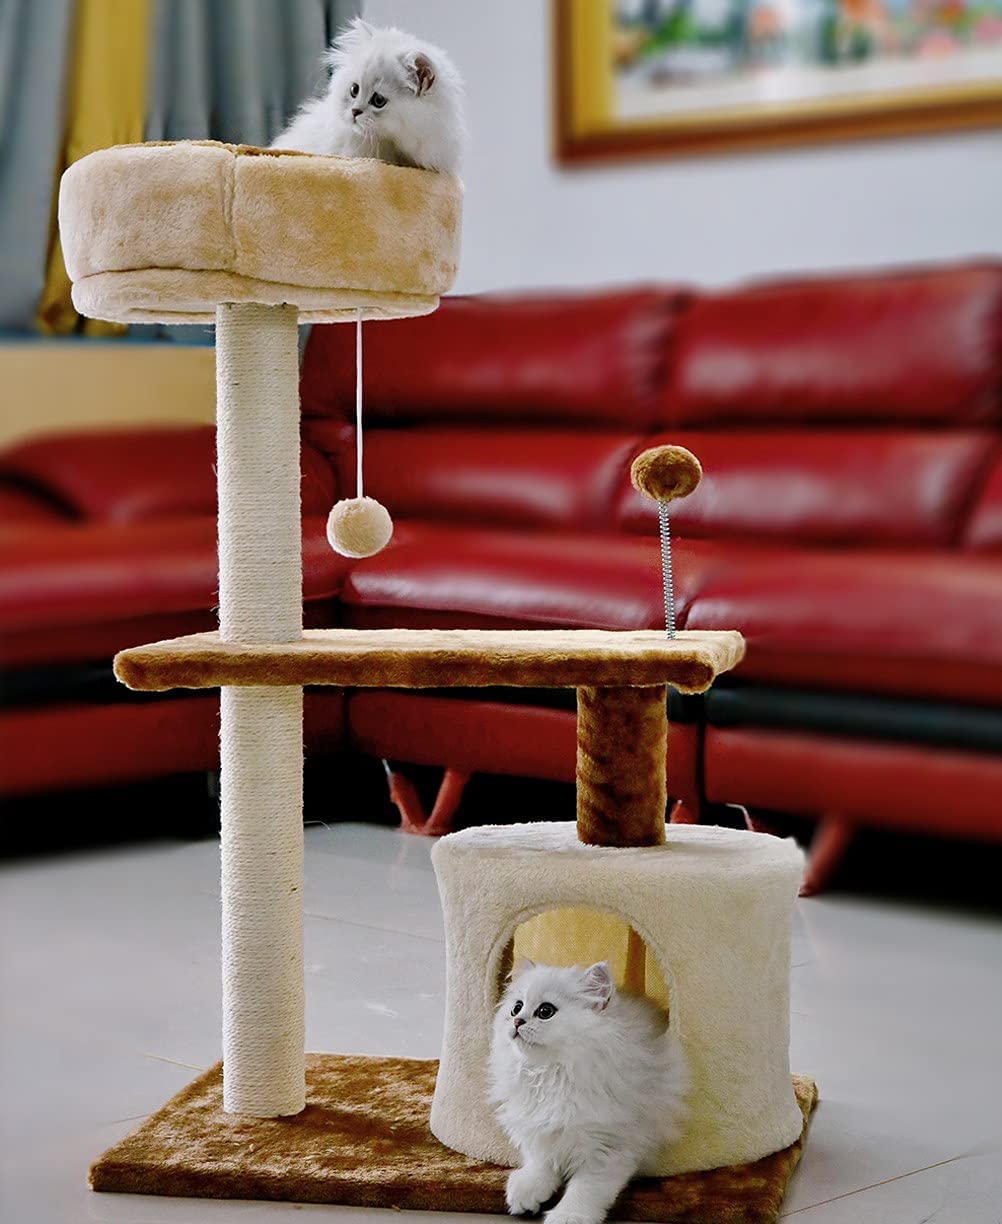 این درخت گربه 3 طبقه خواب و بازی ساعت ها سرگرمی و ماجراجویی را برای گربه شما فراهم می کند و همچنین مکانی راحت برای پنهان شدن یا خوابیدن ارائه می دهد